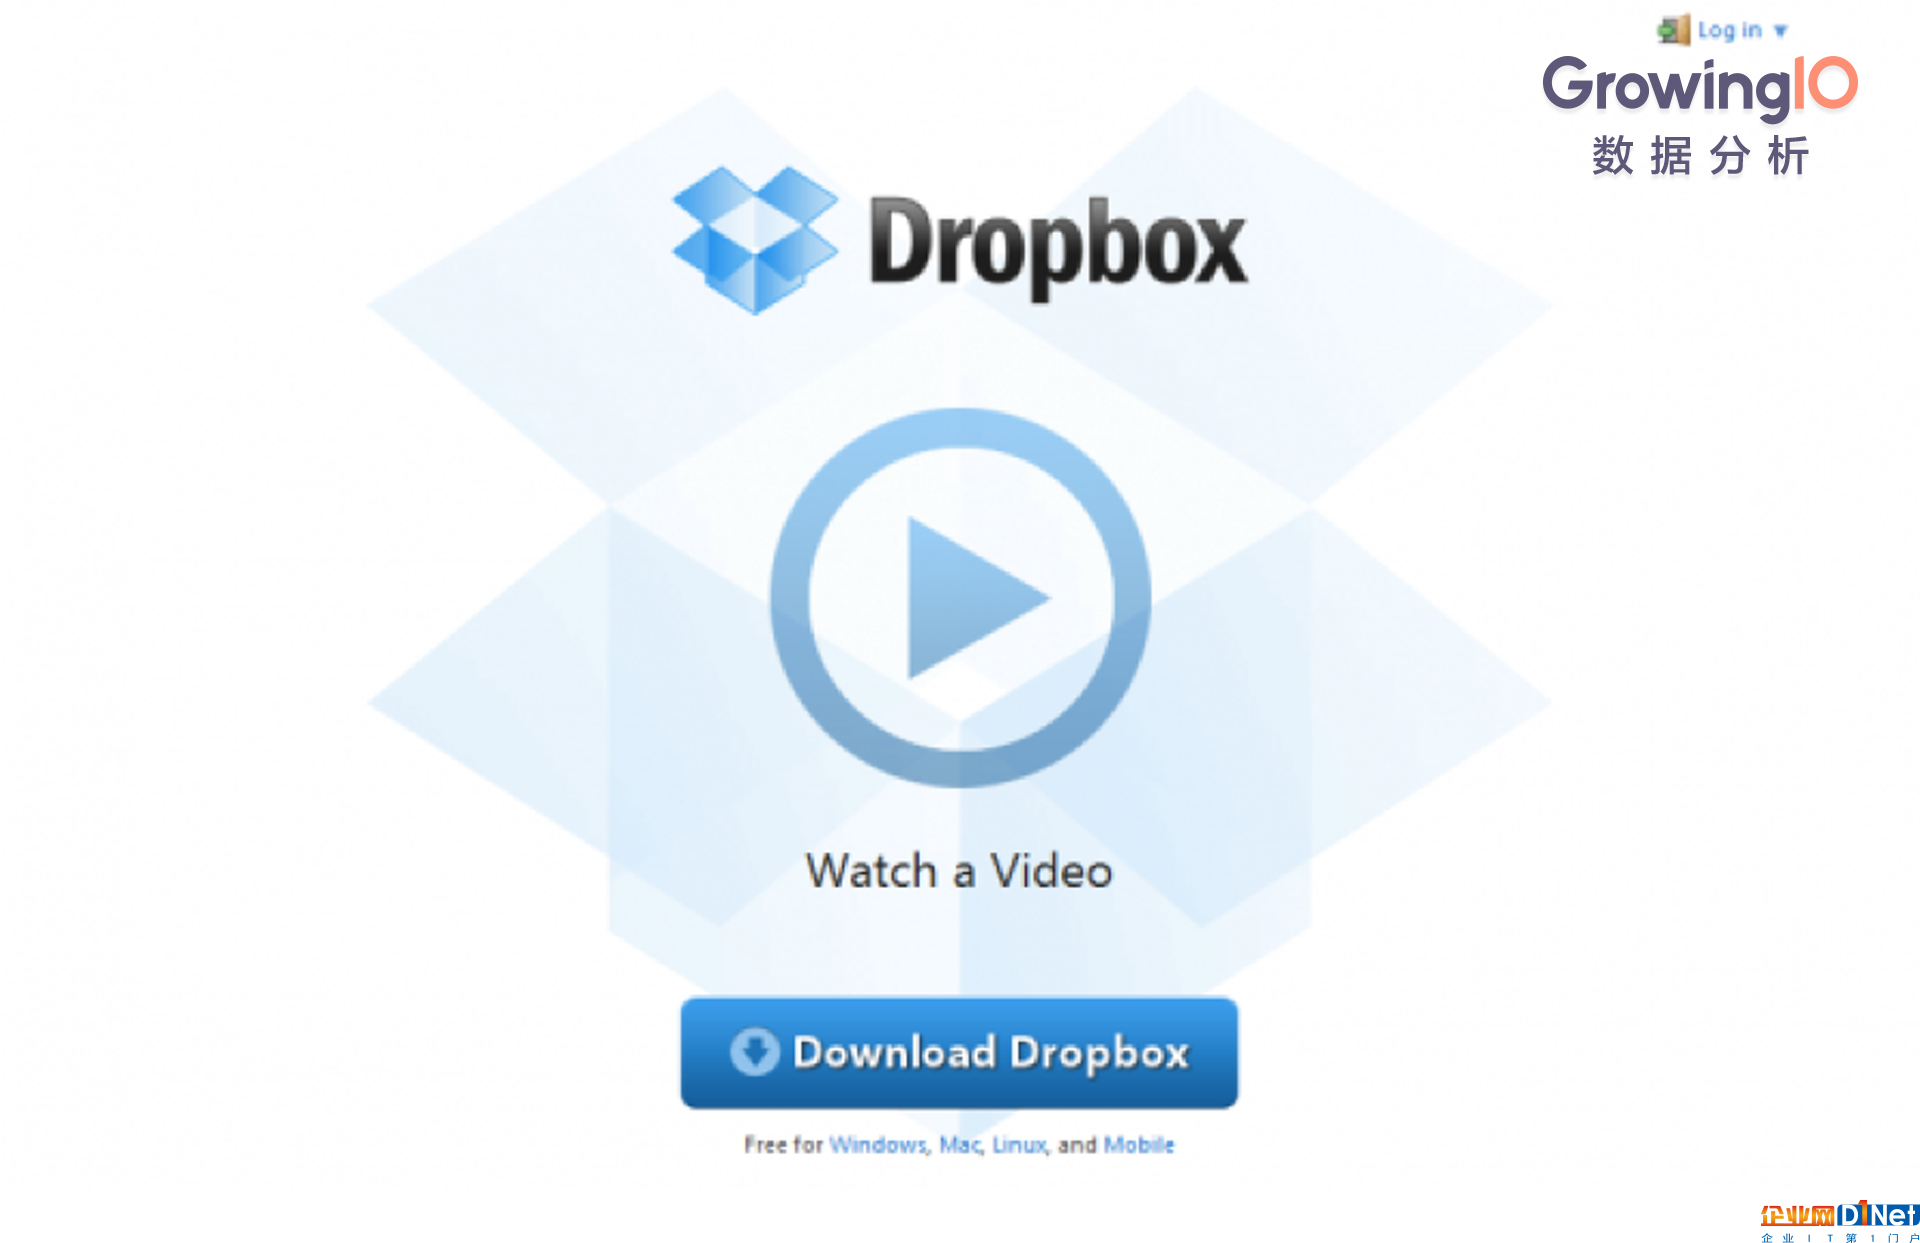 在通往40亿美元估值的路上，Dropbox 做了这7件事情